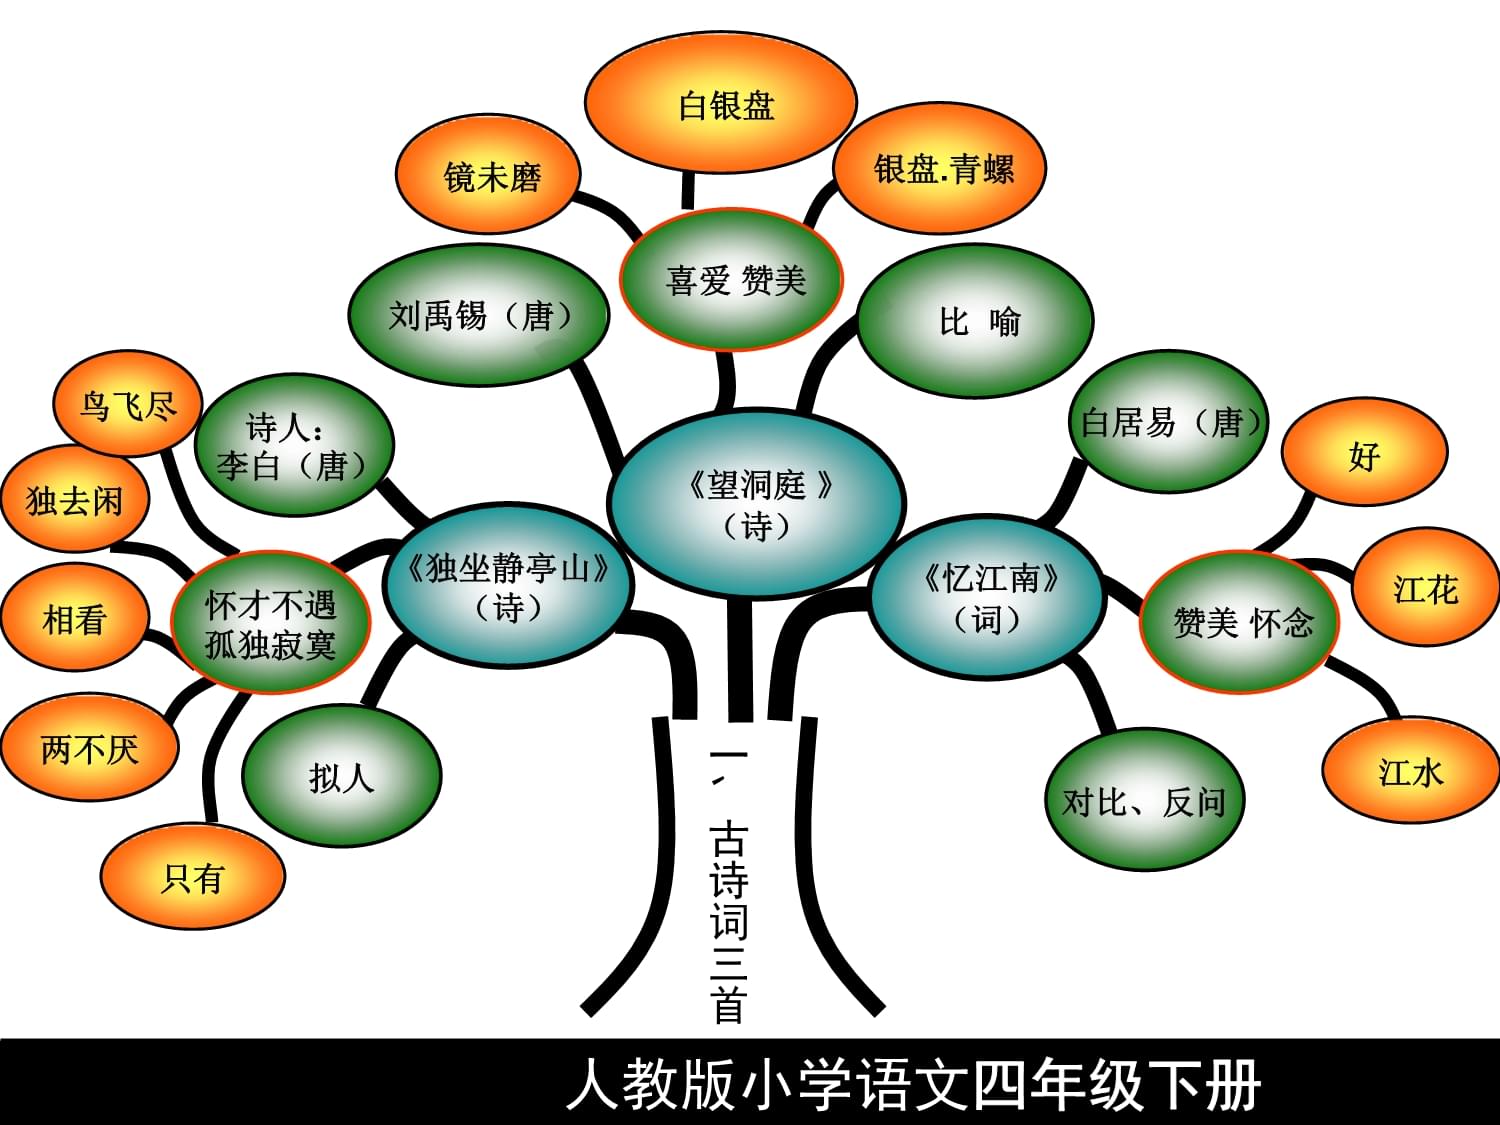 投资知识树框架树，动手构建知识树